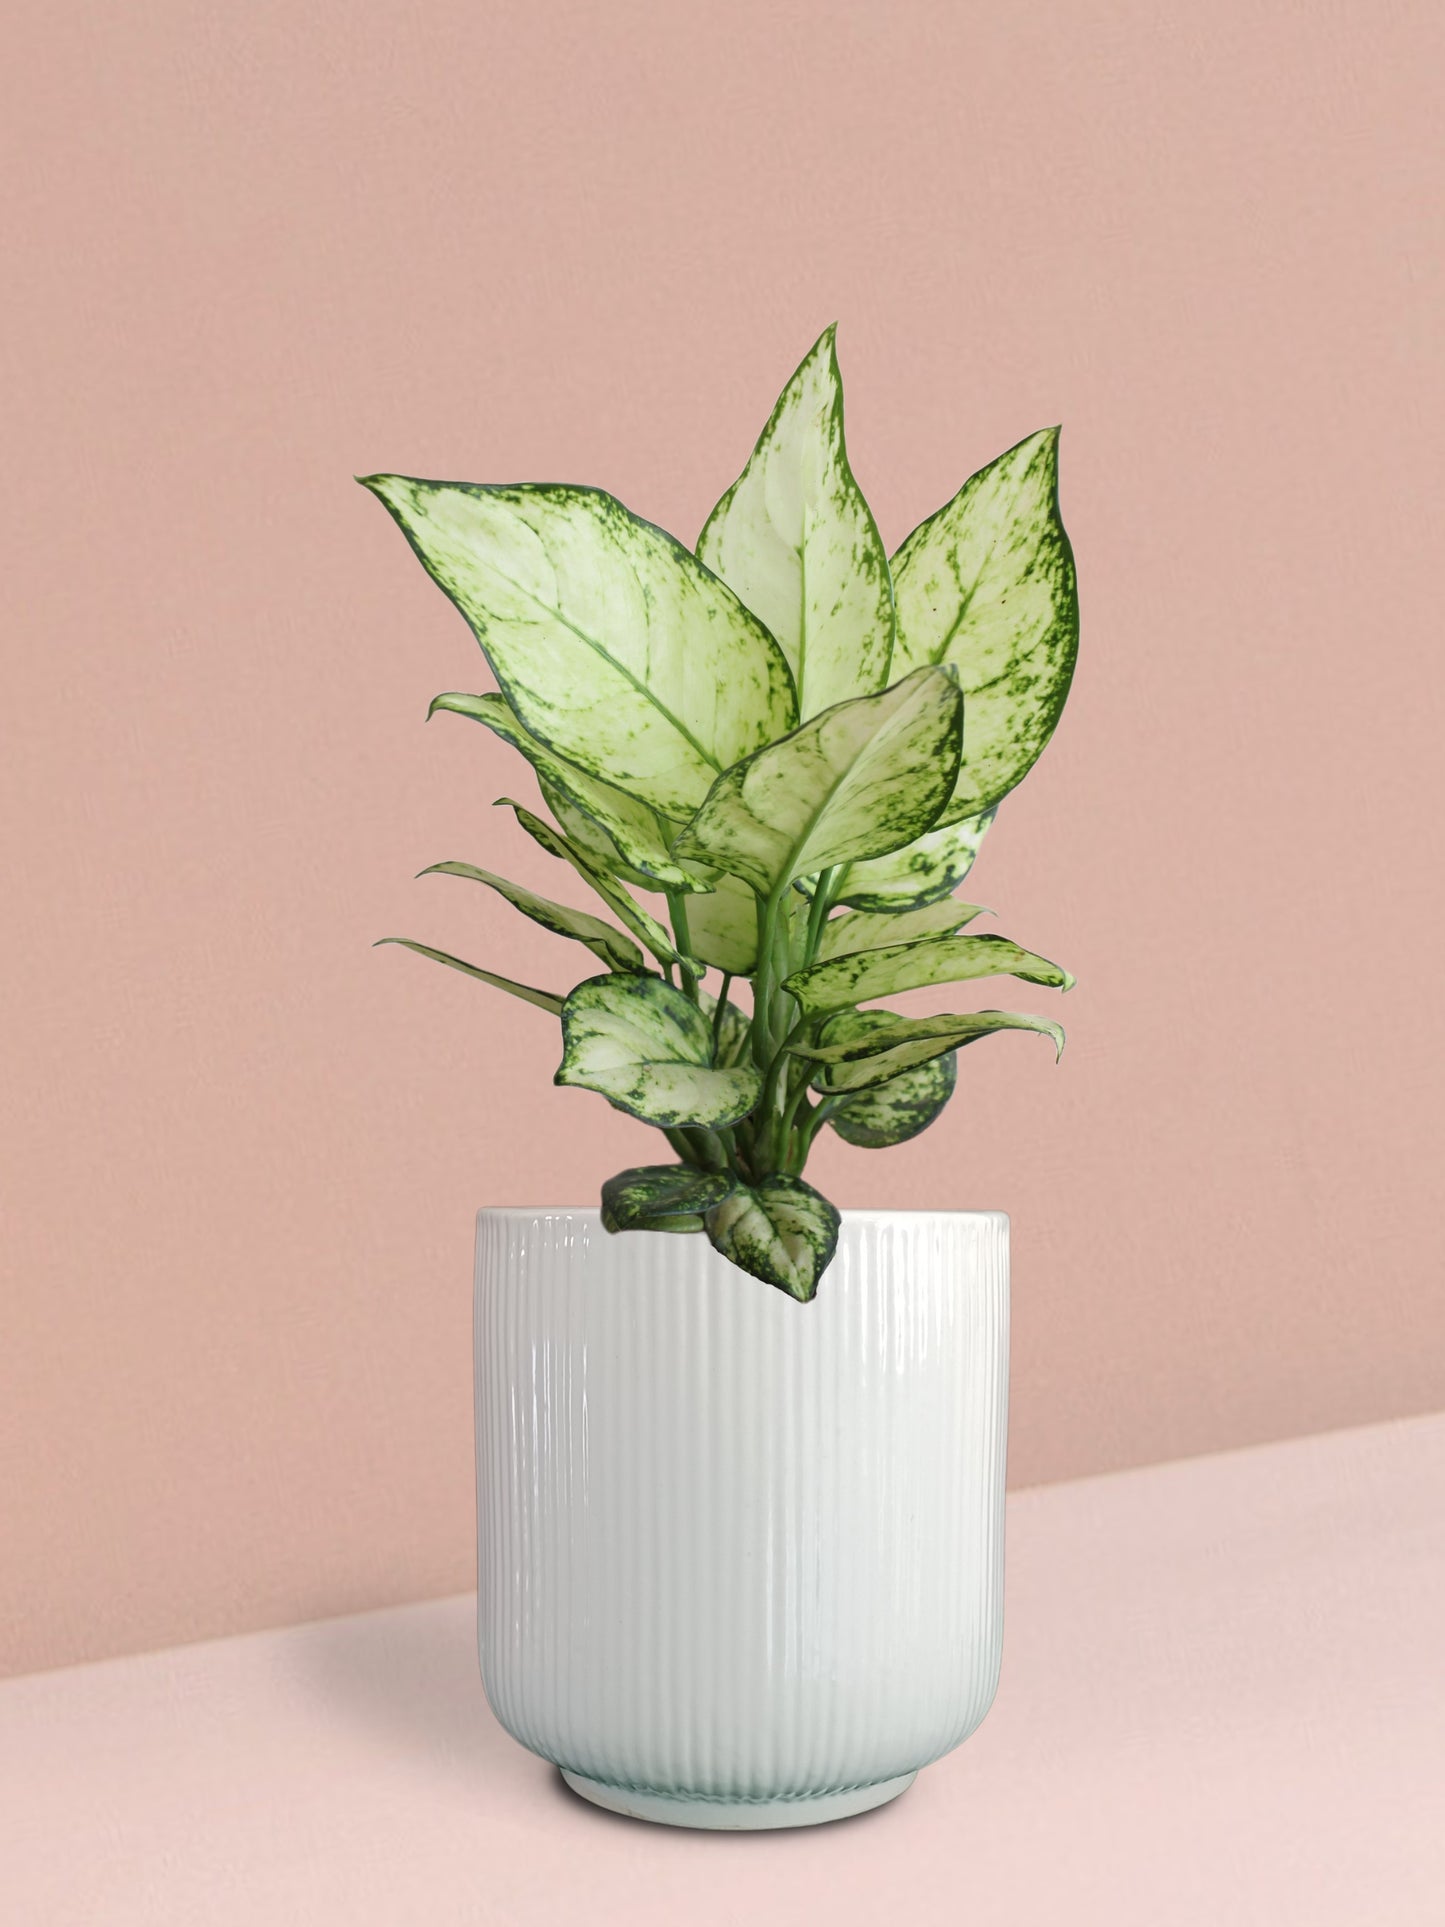 Aglaonema Super White Plant in Ceramic Pot (Medium)